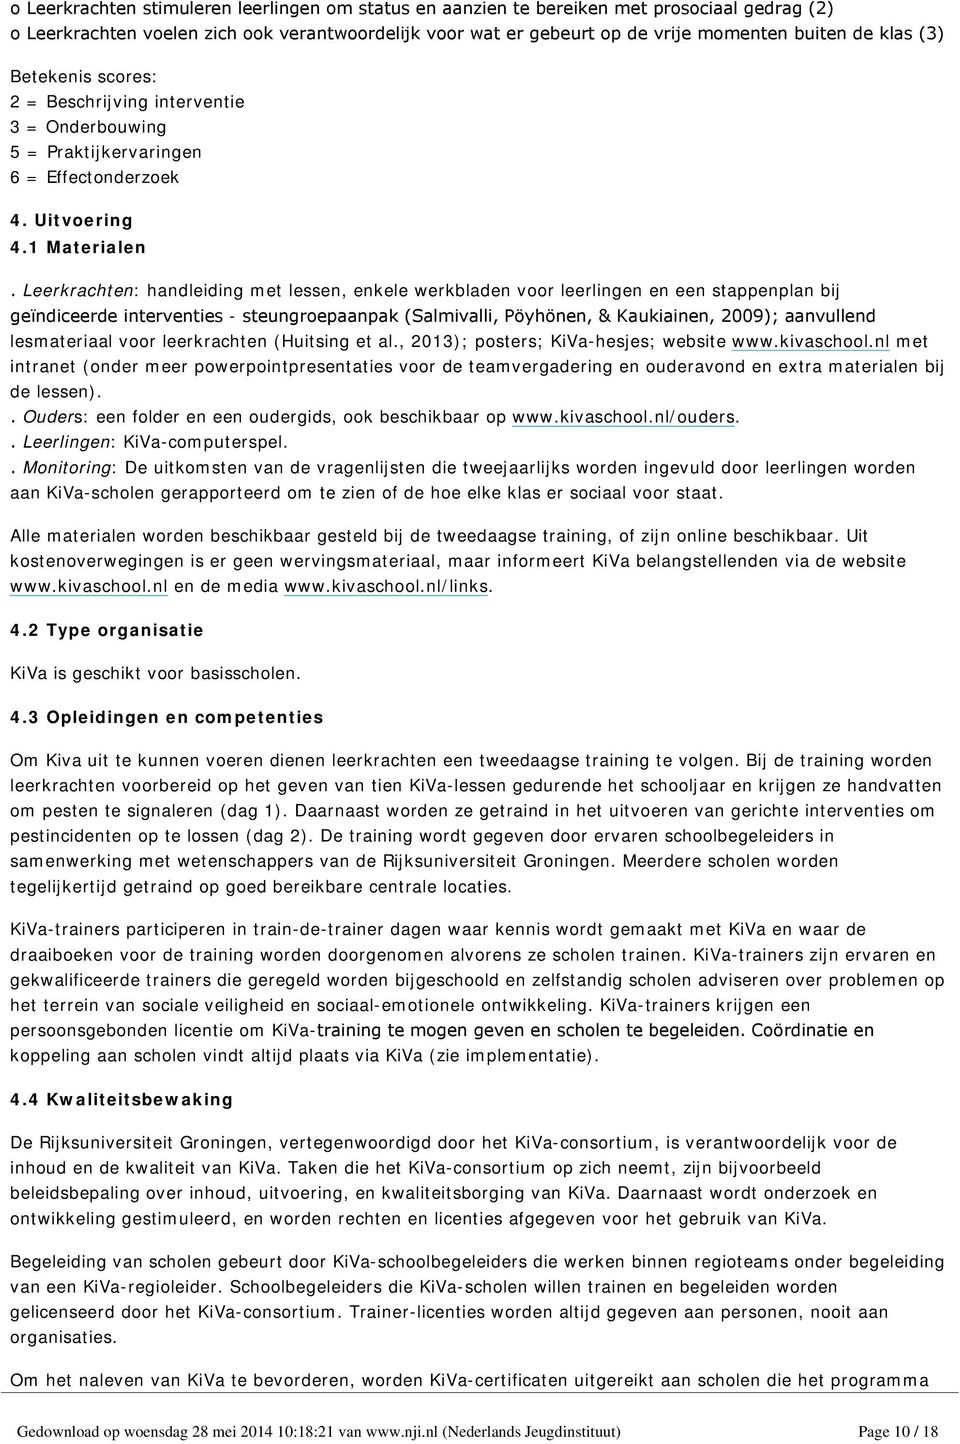 Leerkrachten: handleiding met lessen, enkele werkbladen voor leerlingen en een stappenplan bij geïndiceerde interventies - steungroepaanpak (Salmivalli, Pöyhönen, & Kaukiainen, 2009); aanvullend